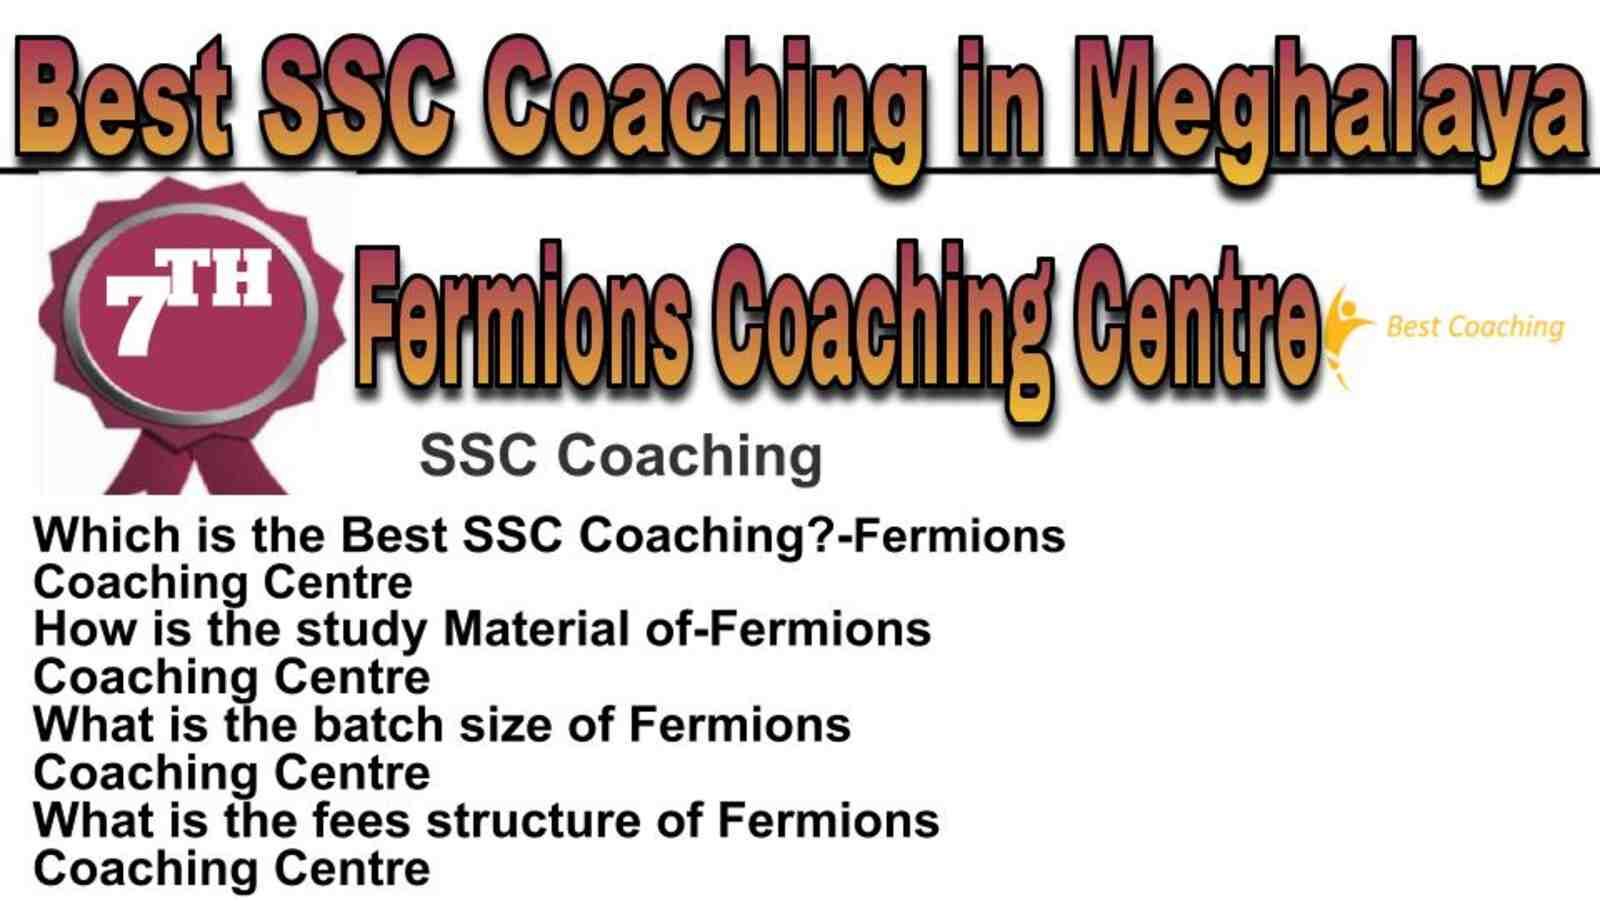 Rank 7 best SSC coaching in Meghalaya